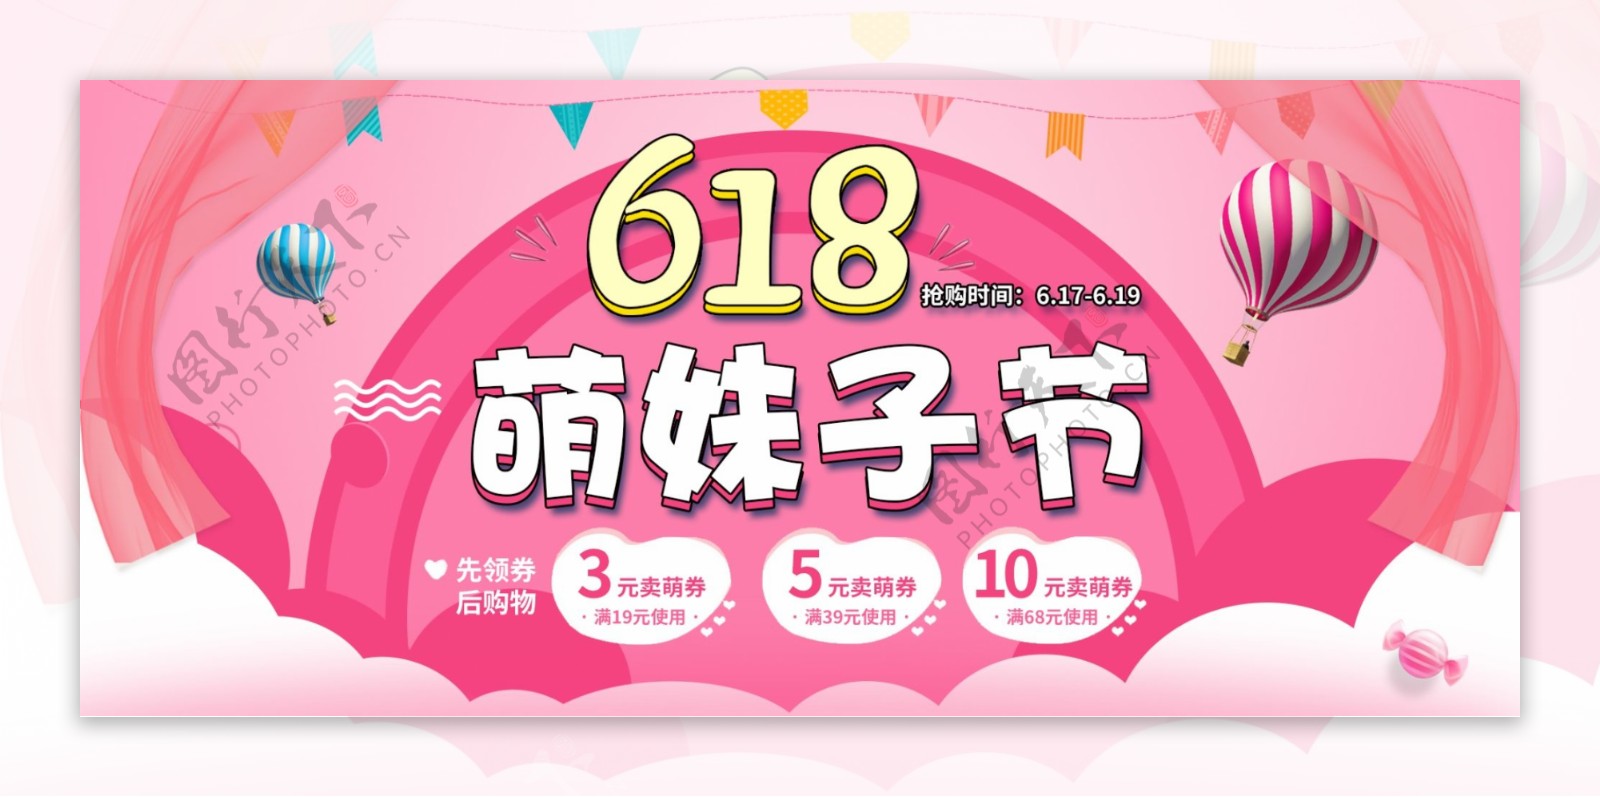 618萌妹子节日粉色全屏海报